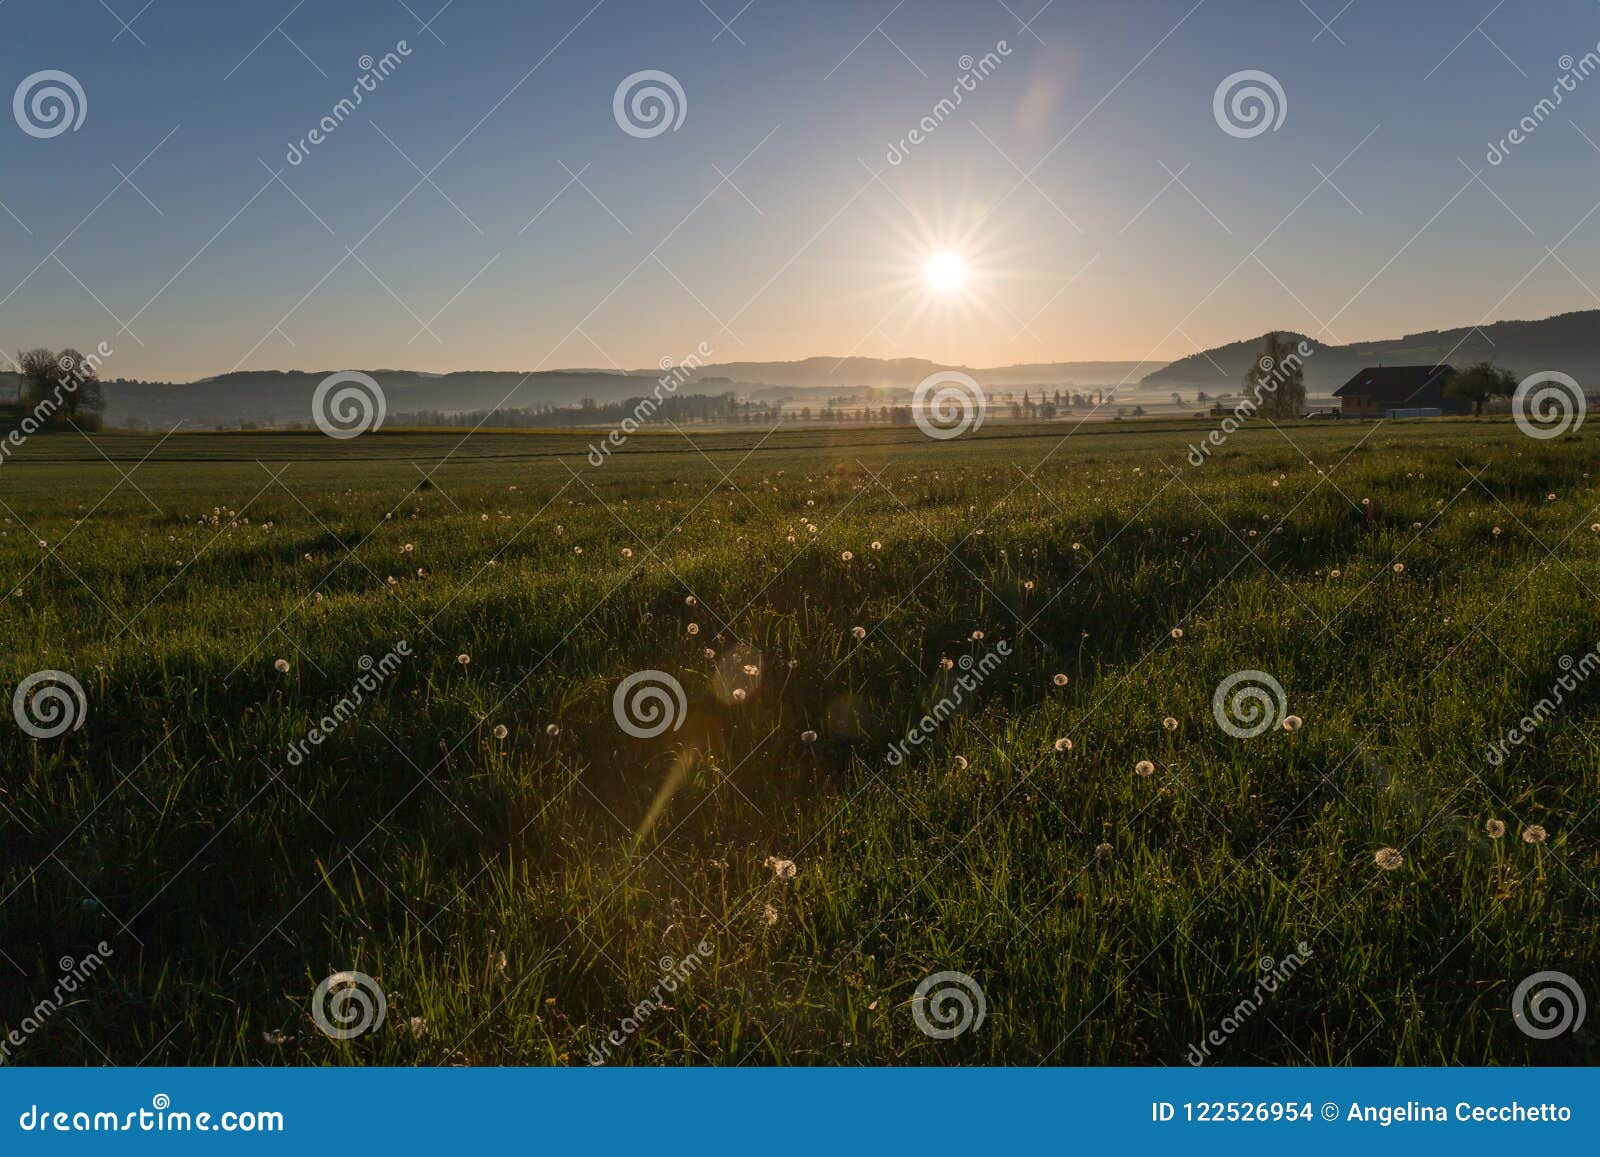 Sonnenaufgang über Löwenzahn und Landschafts-Feldern mit Tau-Tropfen herein. Sonnenaufgang über Löwenzahn und grünen Landschafts-Feldern mit Tau-Tropfen im Frühjahr